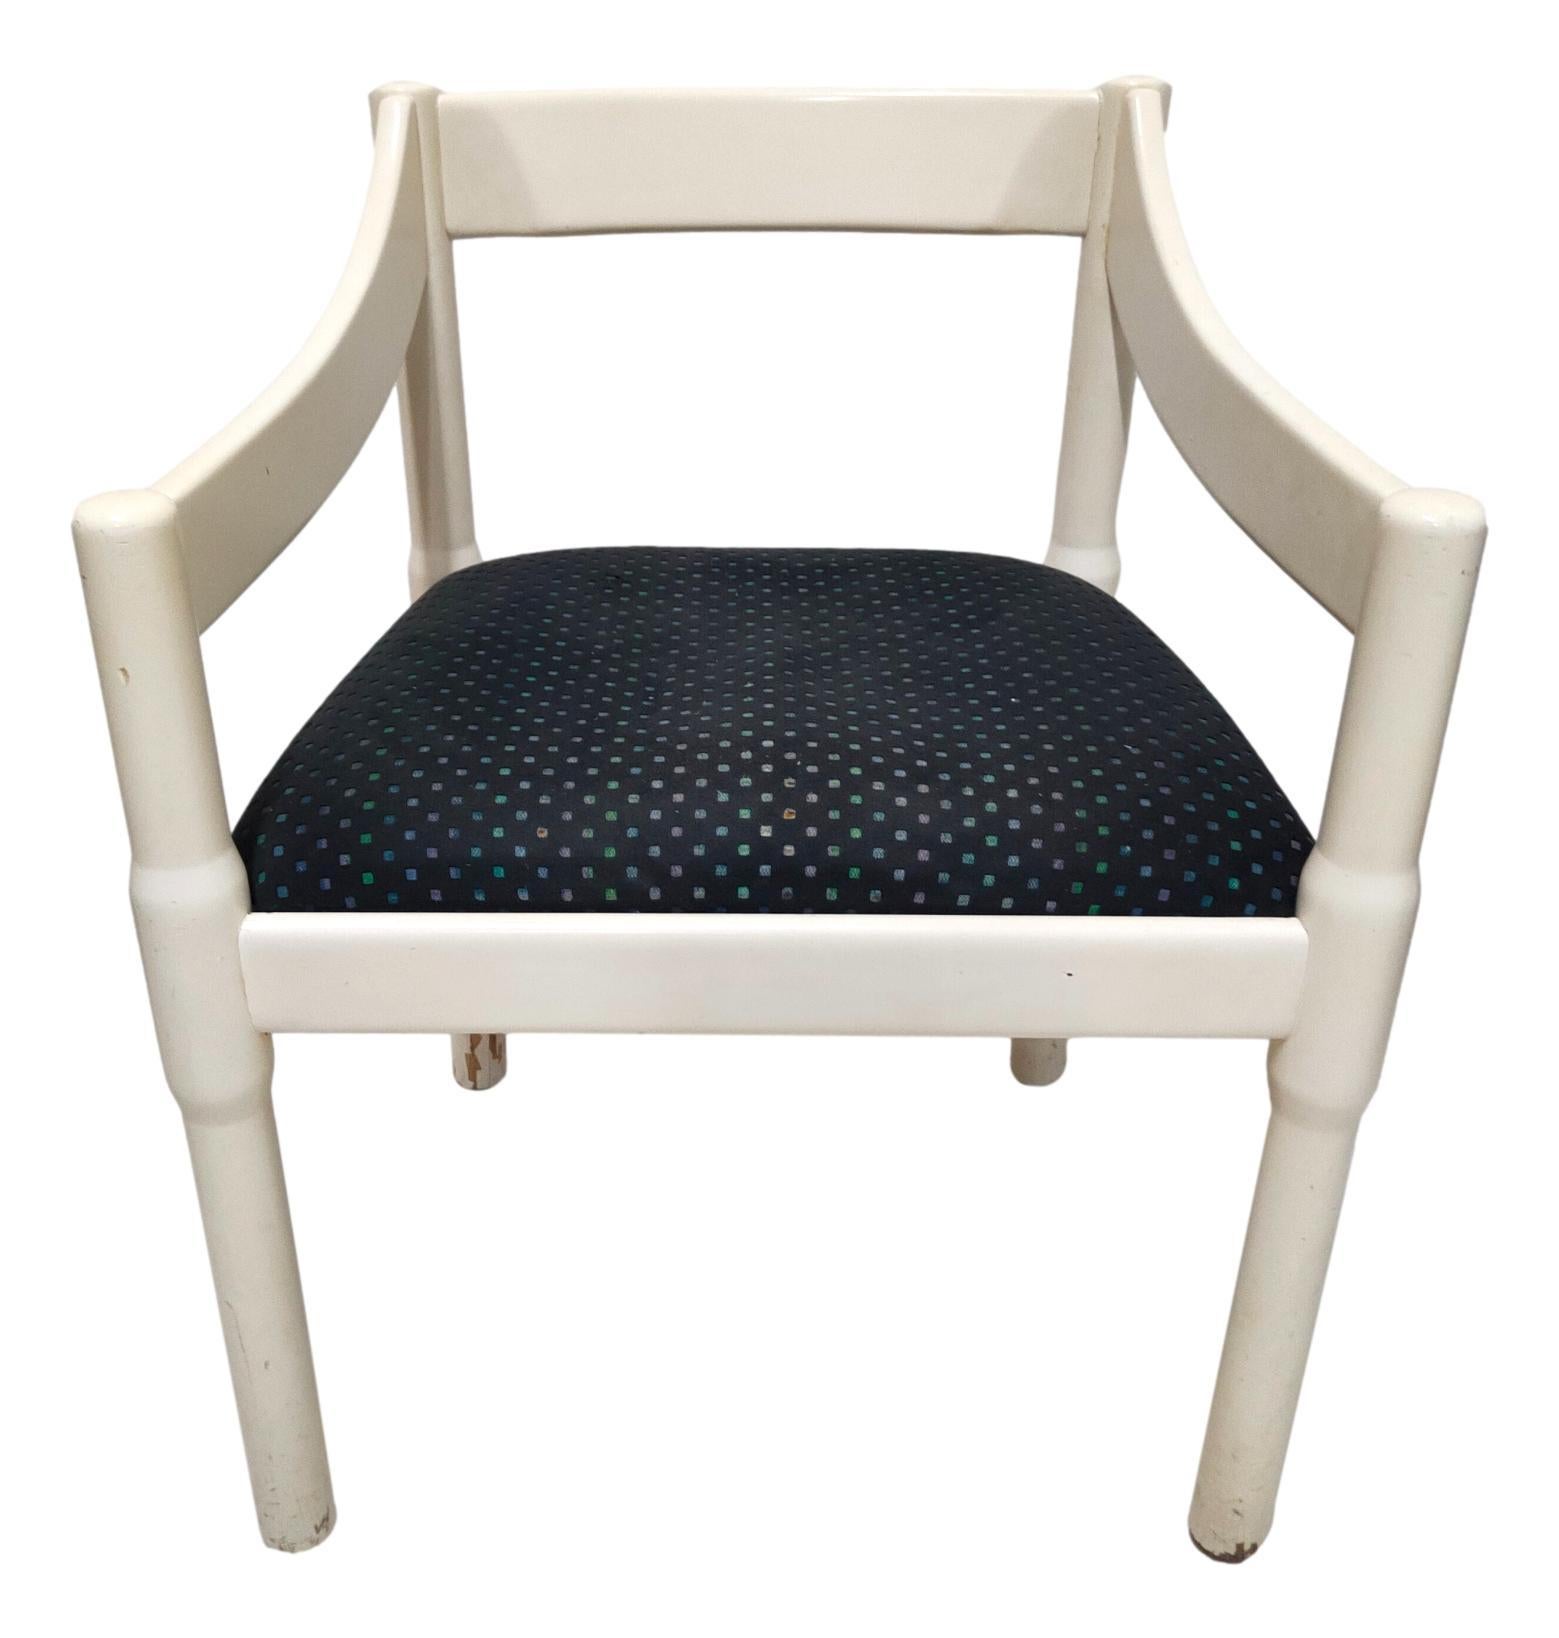 ikonischer Stuhl 'carimate', entworfen von Vico Magistretti für Cassina, 1960er Jahre, aus Massivholz mit Stoffsitz. 
Maße: 75 cm hoch, 51 cm breit und 48 cm tief, weißer, gemusterter Stoff auf blauem Grund, mit einigen leichten Flecken, wie auf dem